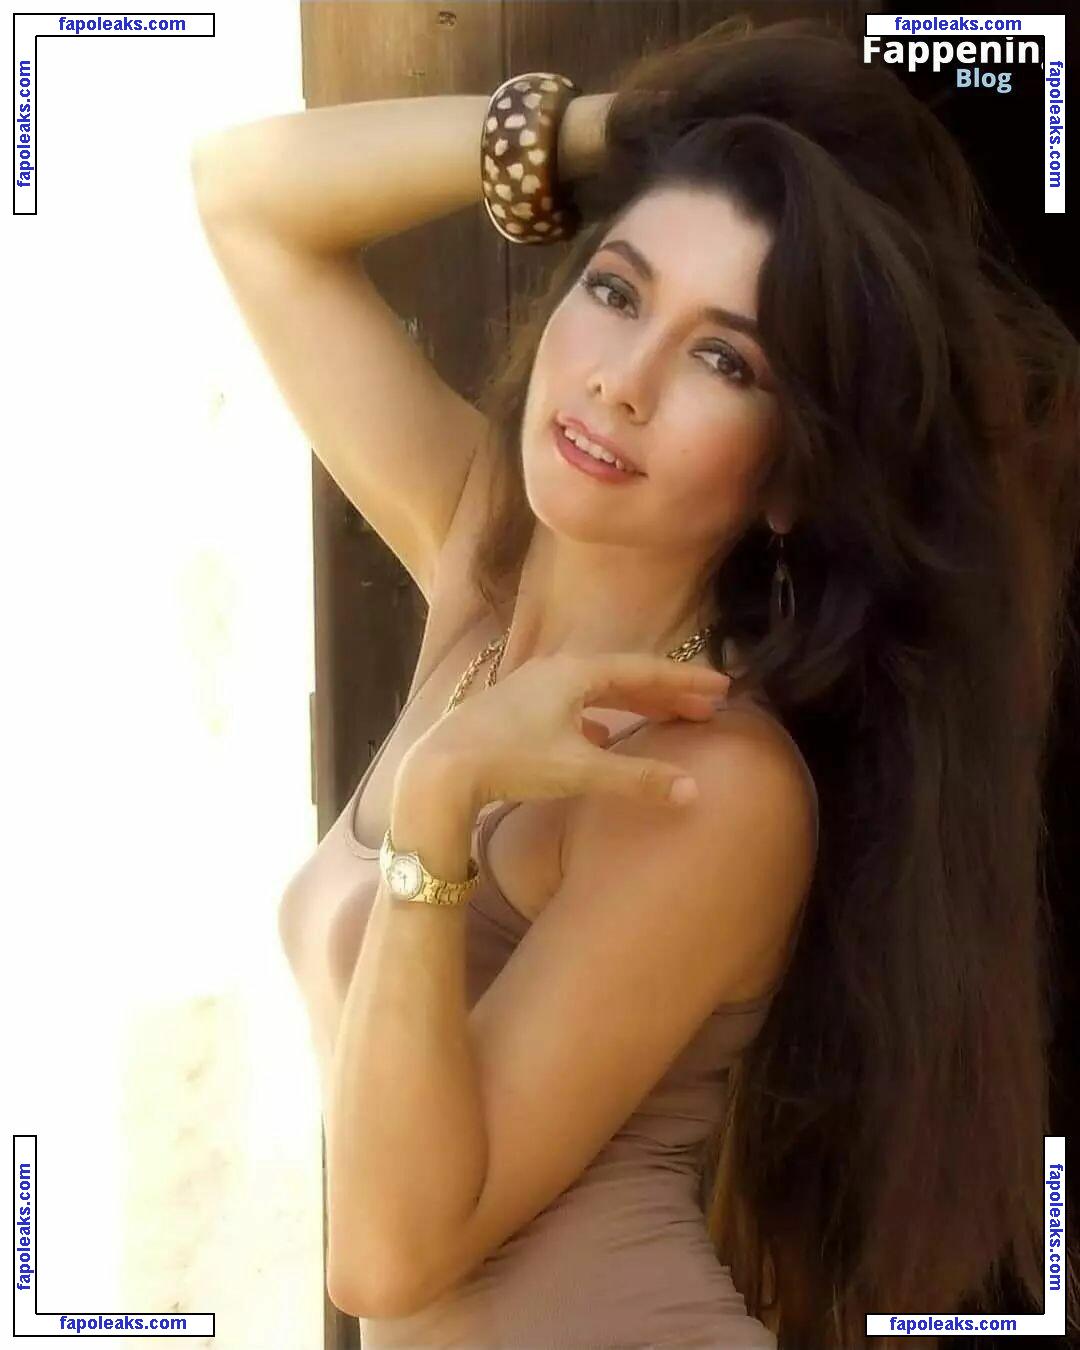 Bella De La Vega nude photo #0001 from OnlyFans